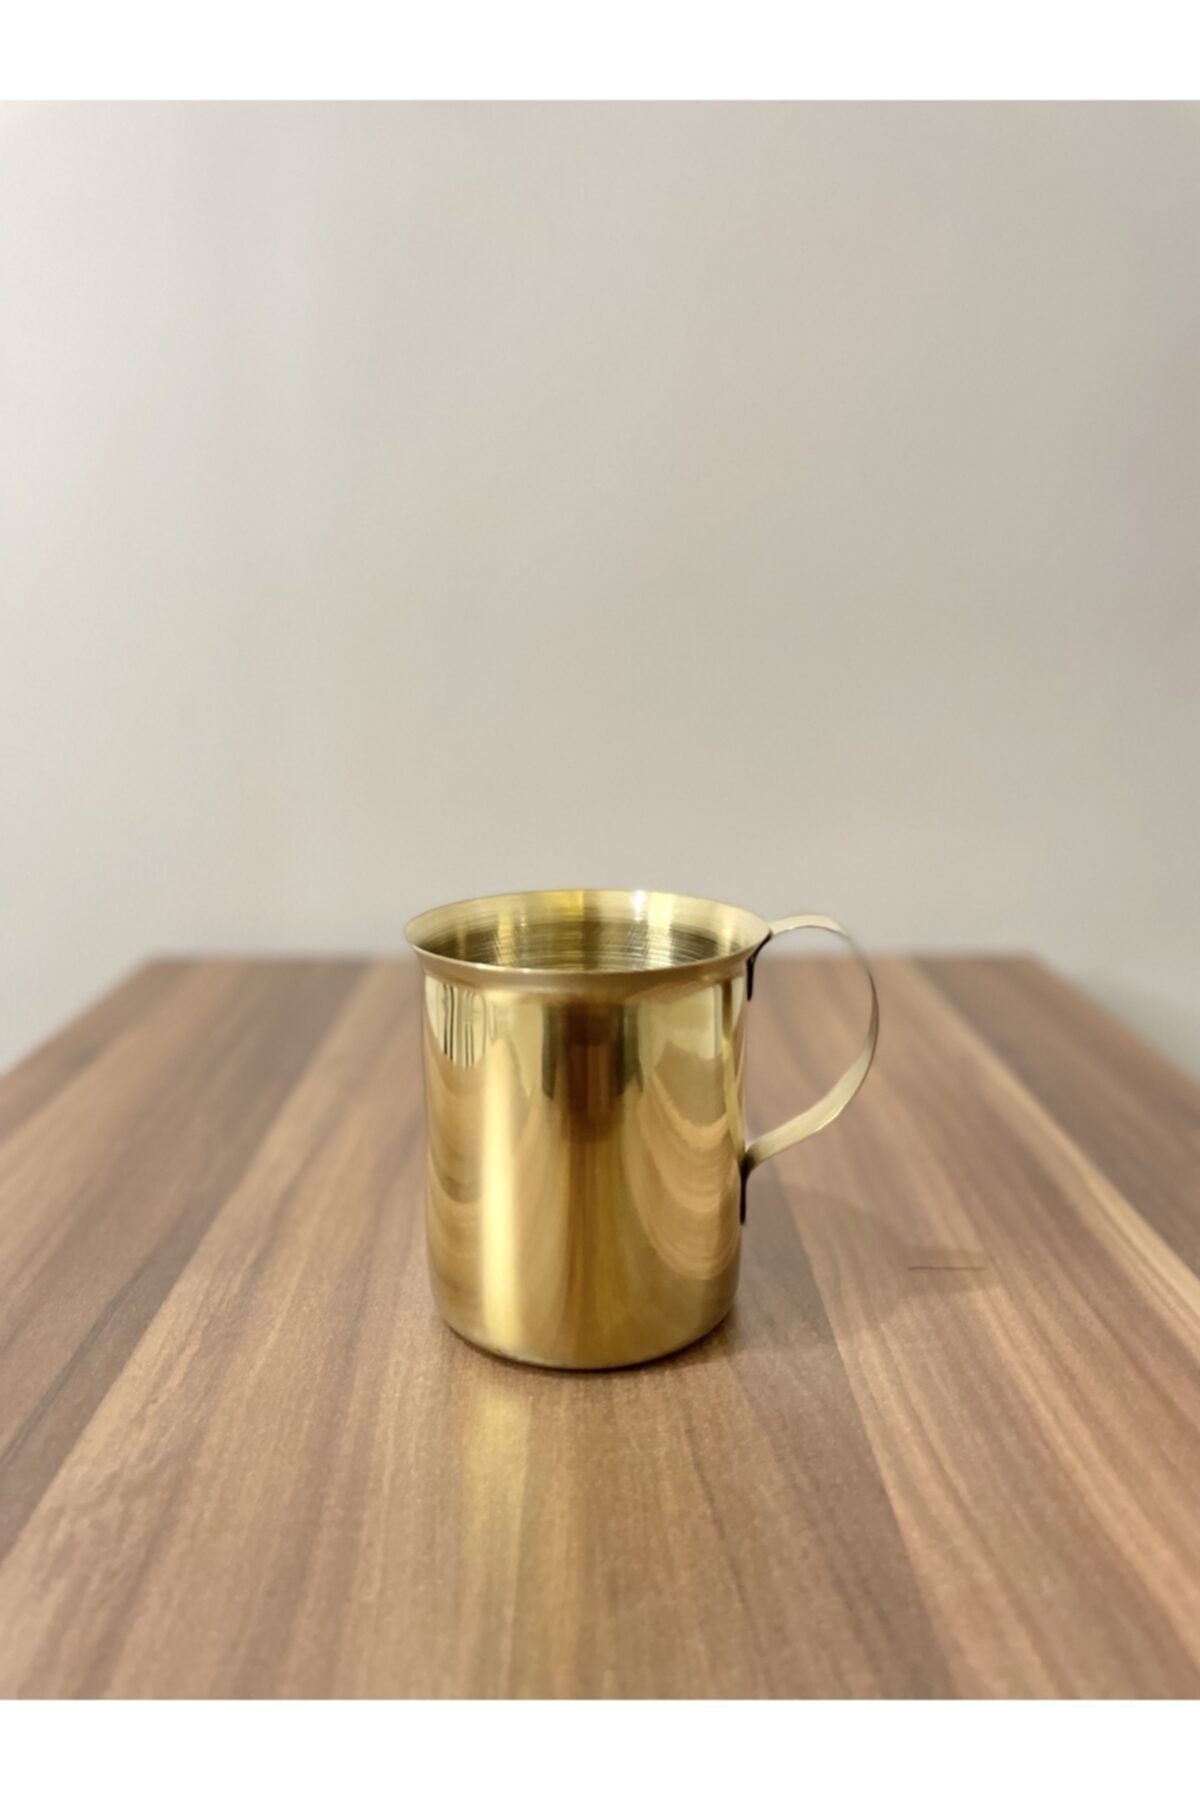 Gaios Design Gold Altın Renk Çelik Sütlük - Bardak